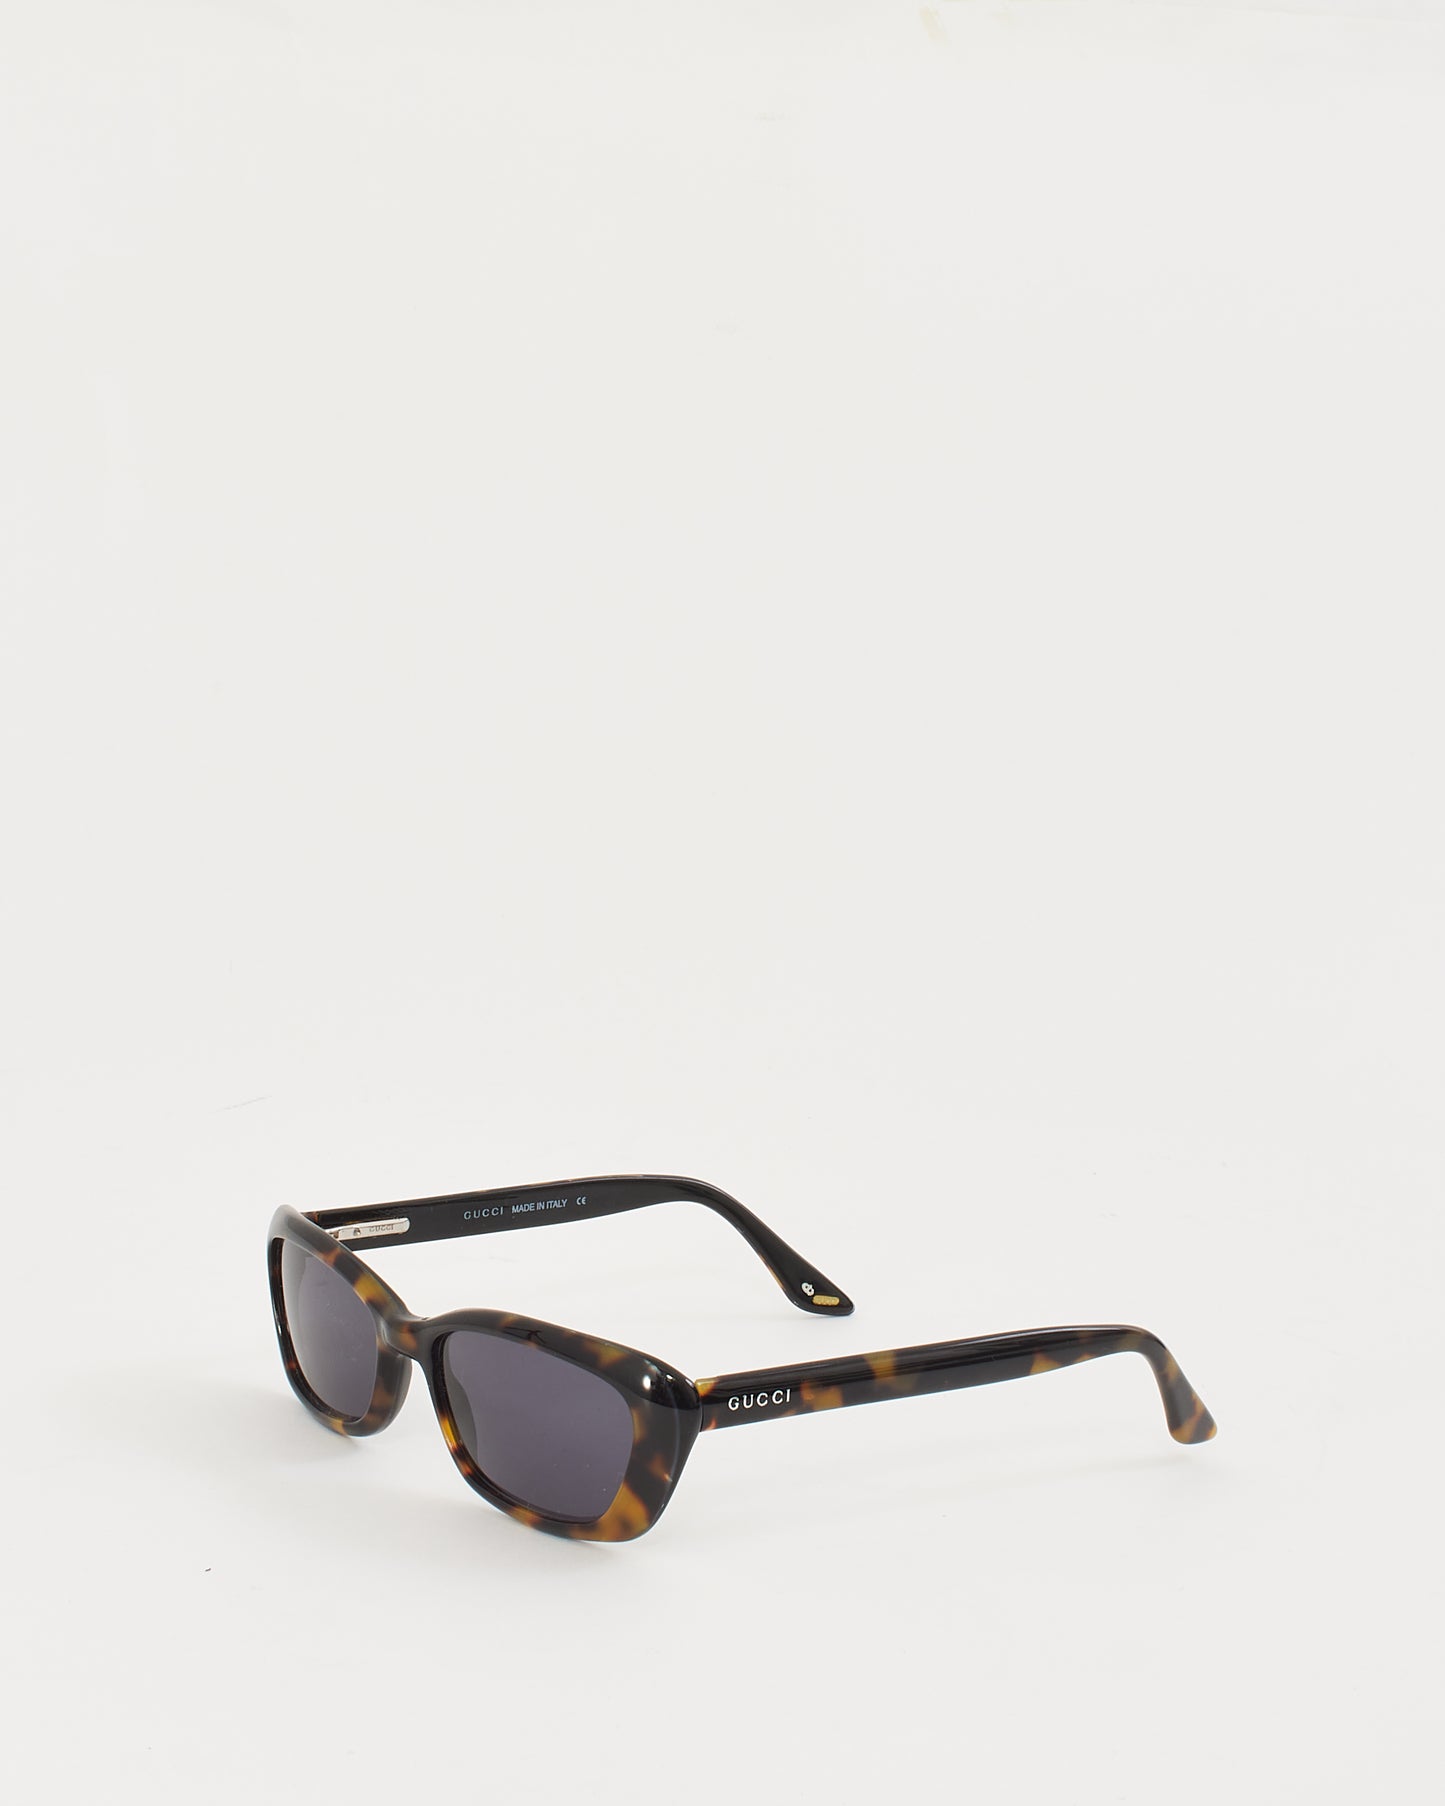 Gucci Tortoise GG 2415/S Small Oval Sunglasses